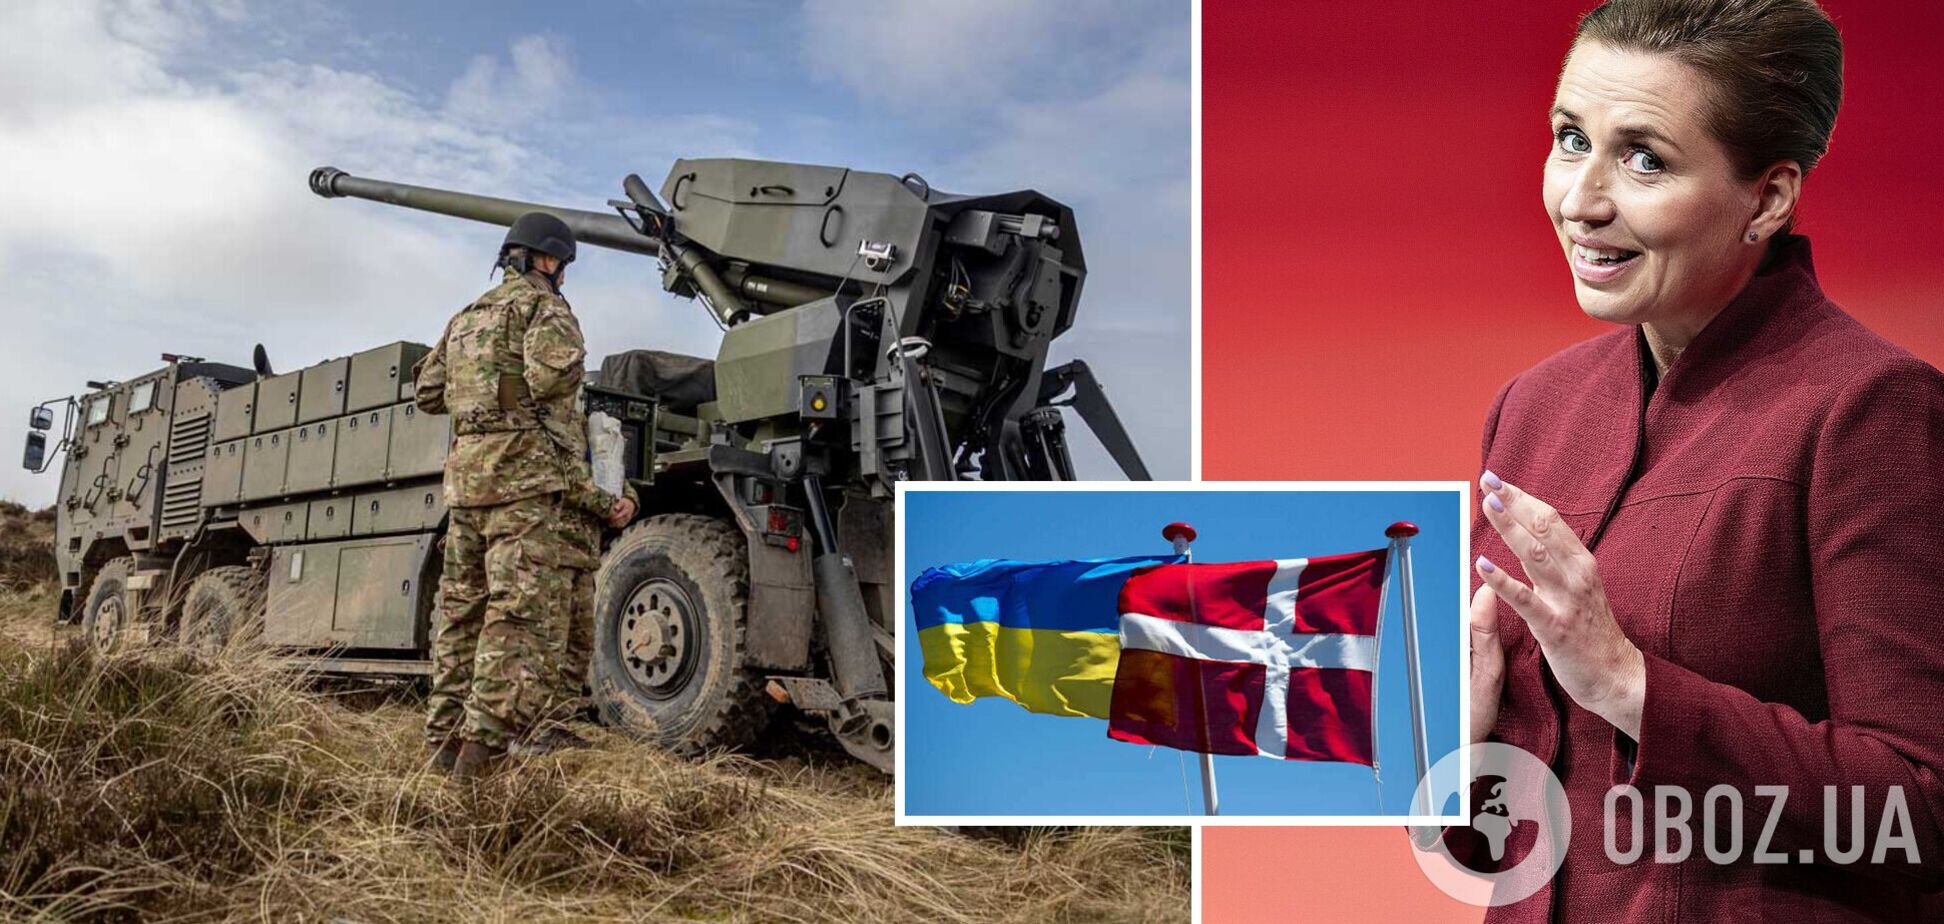 Дания пообещала передать Украине всю свою артиллерию